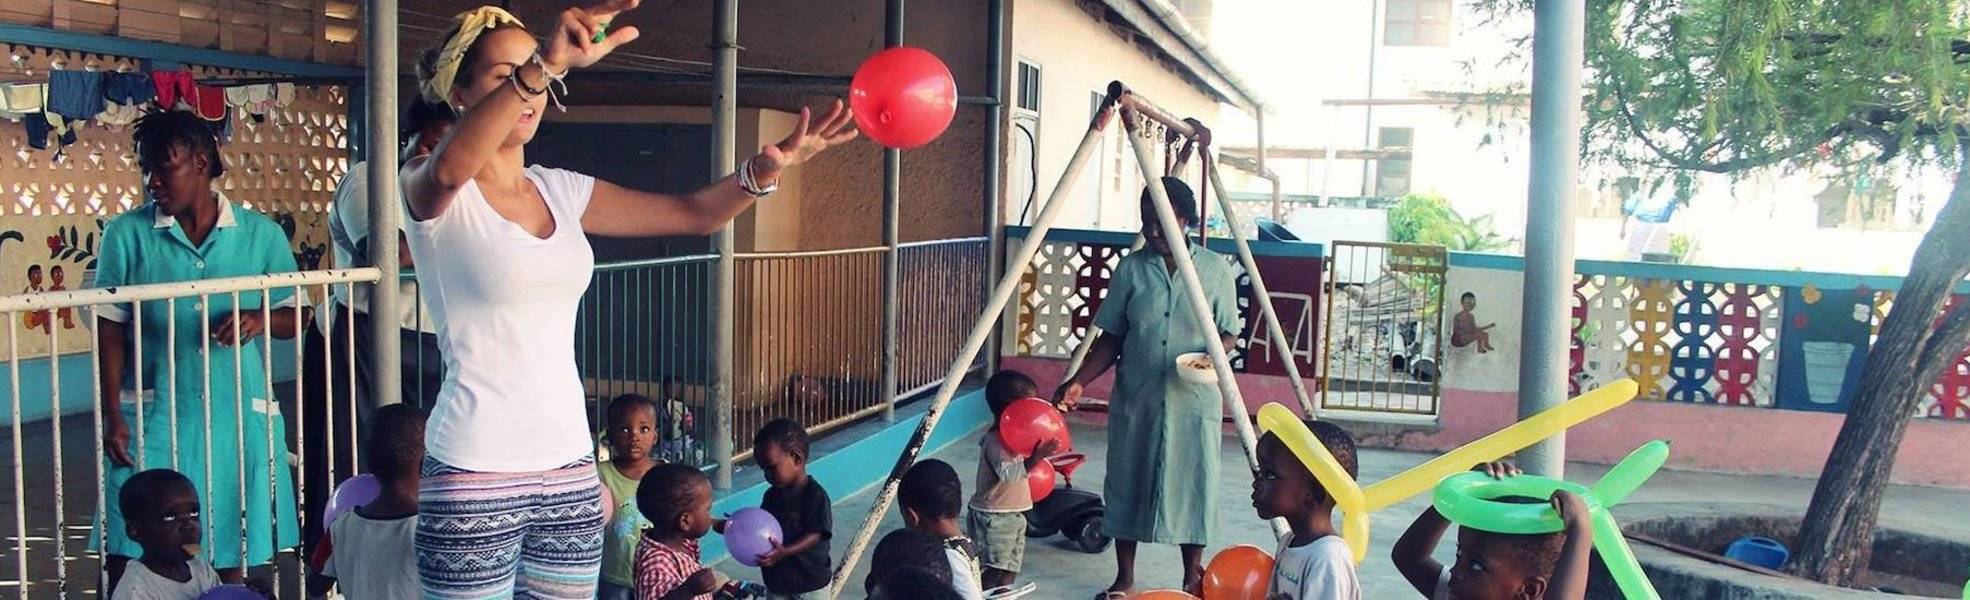 Freiwilligenarbeit im Kindergarten mit Vorschule in Tansania